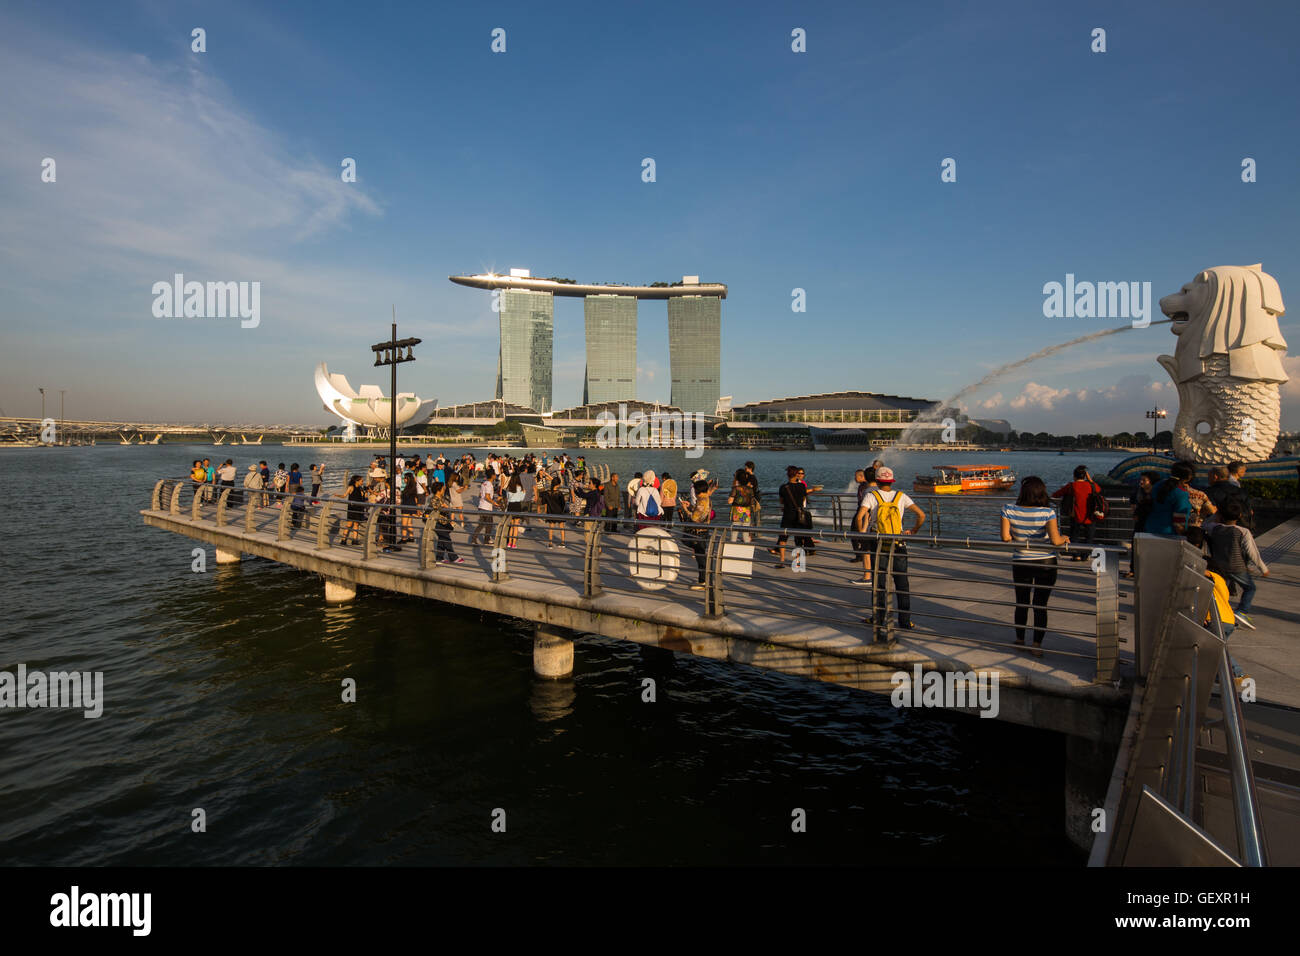 2016. Un'enorme folla di turisti si radunano nell'area della baia galleggiante di Merlion per scattare foto e godersi il paesaggio dell'area di Marina Bay. Singapore. Foto Stock